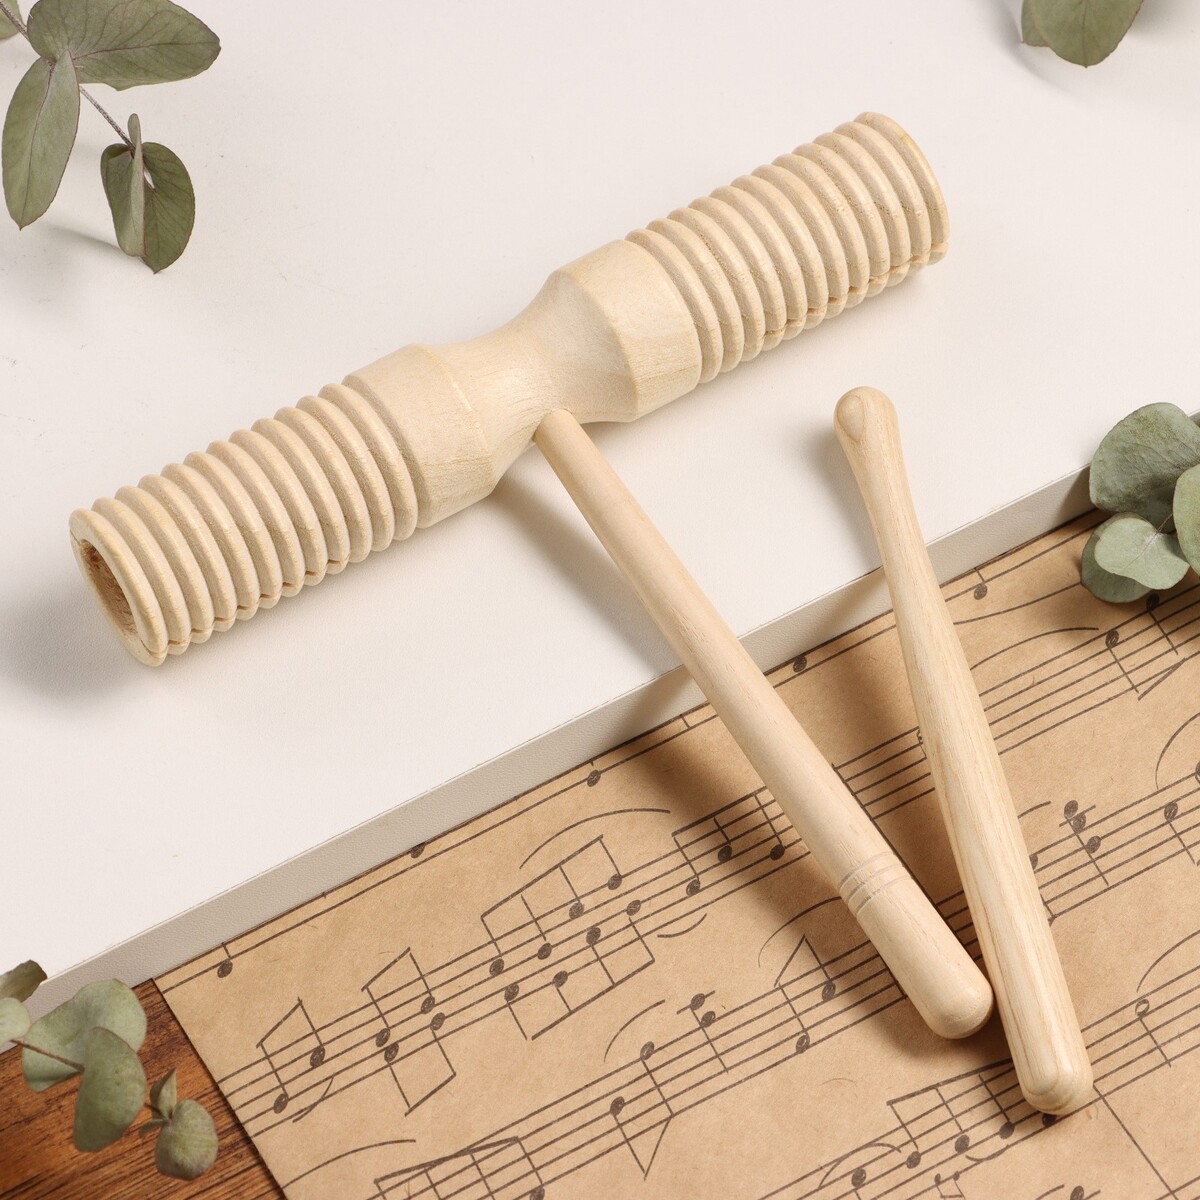 Музыкальный инструмент гуиро music life деревянный музыкальный инструмент тулигрушка шарманка цирк